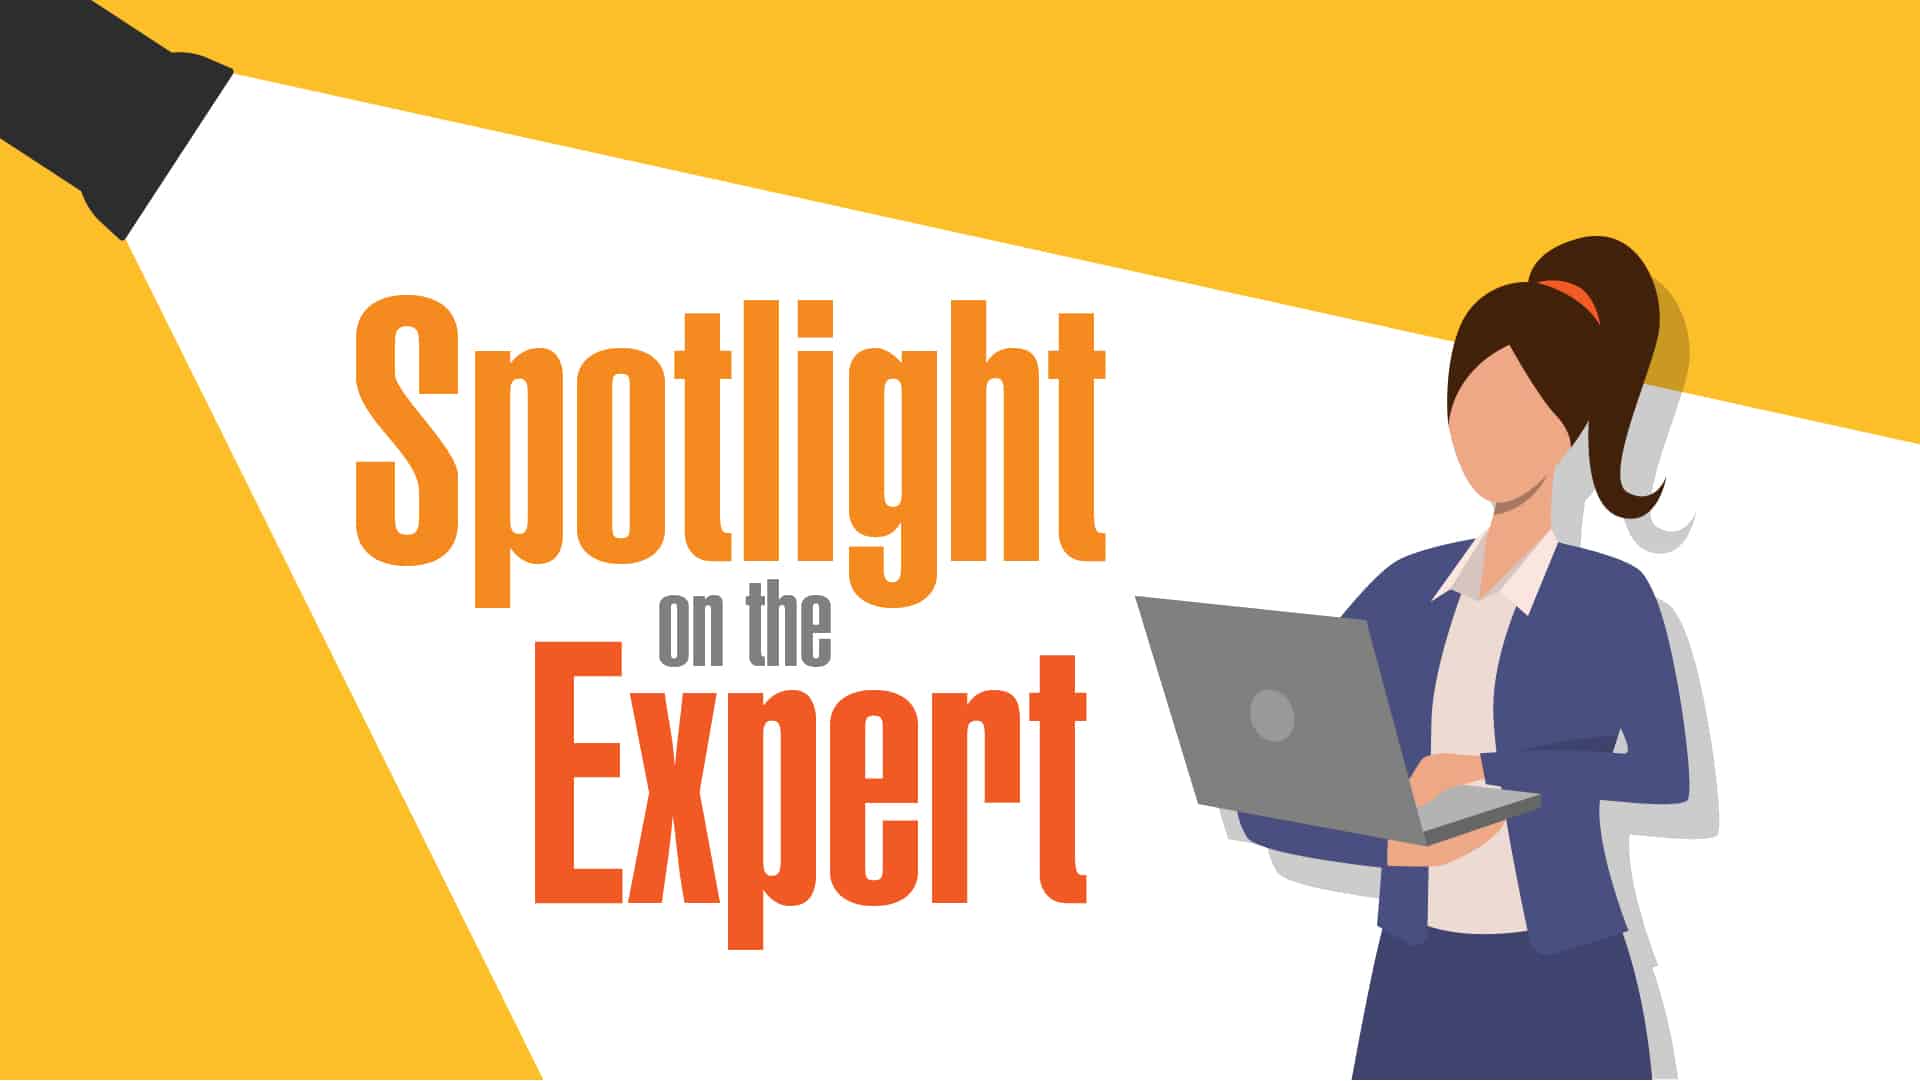 Kath Pay: Spotlight on the expert